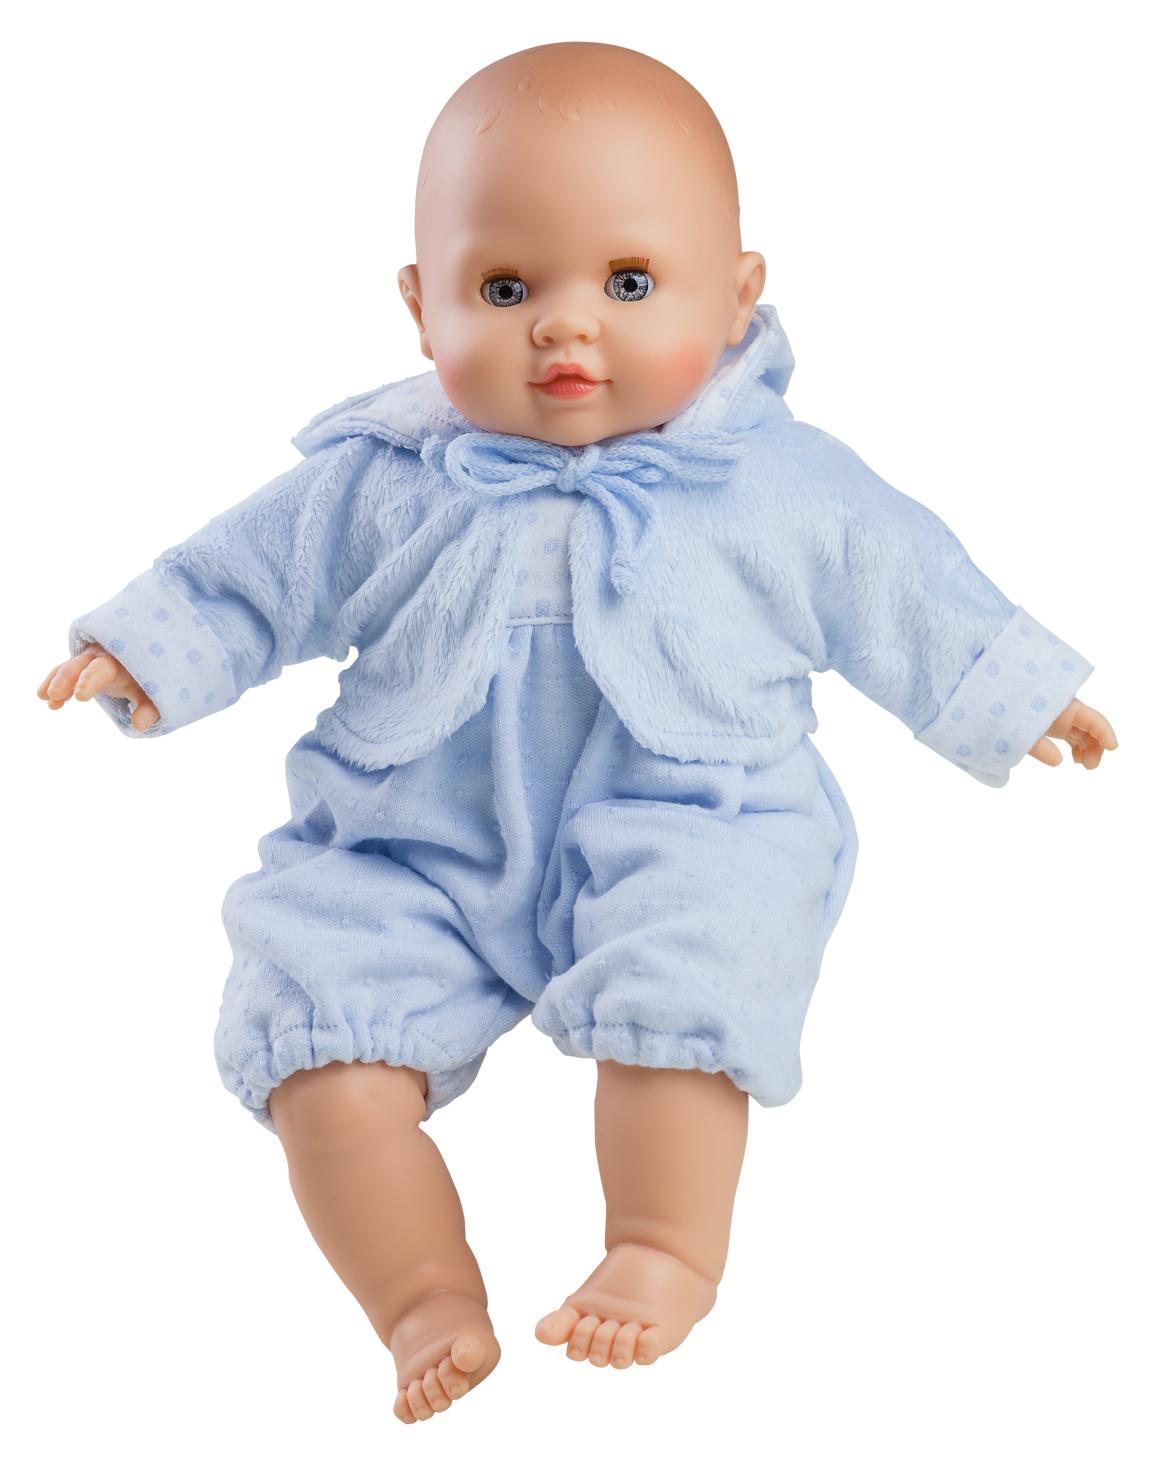 Realistické miminko - chlapeček Julius od firmy Paola Reina